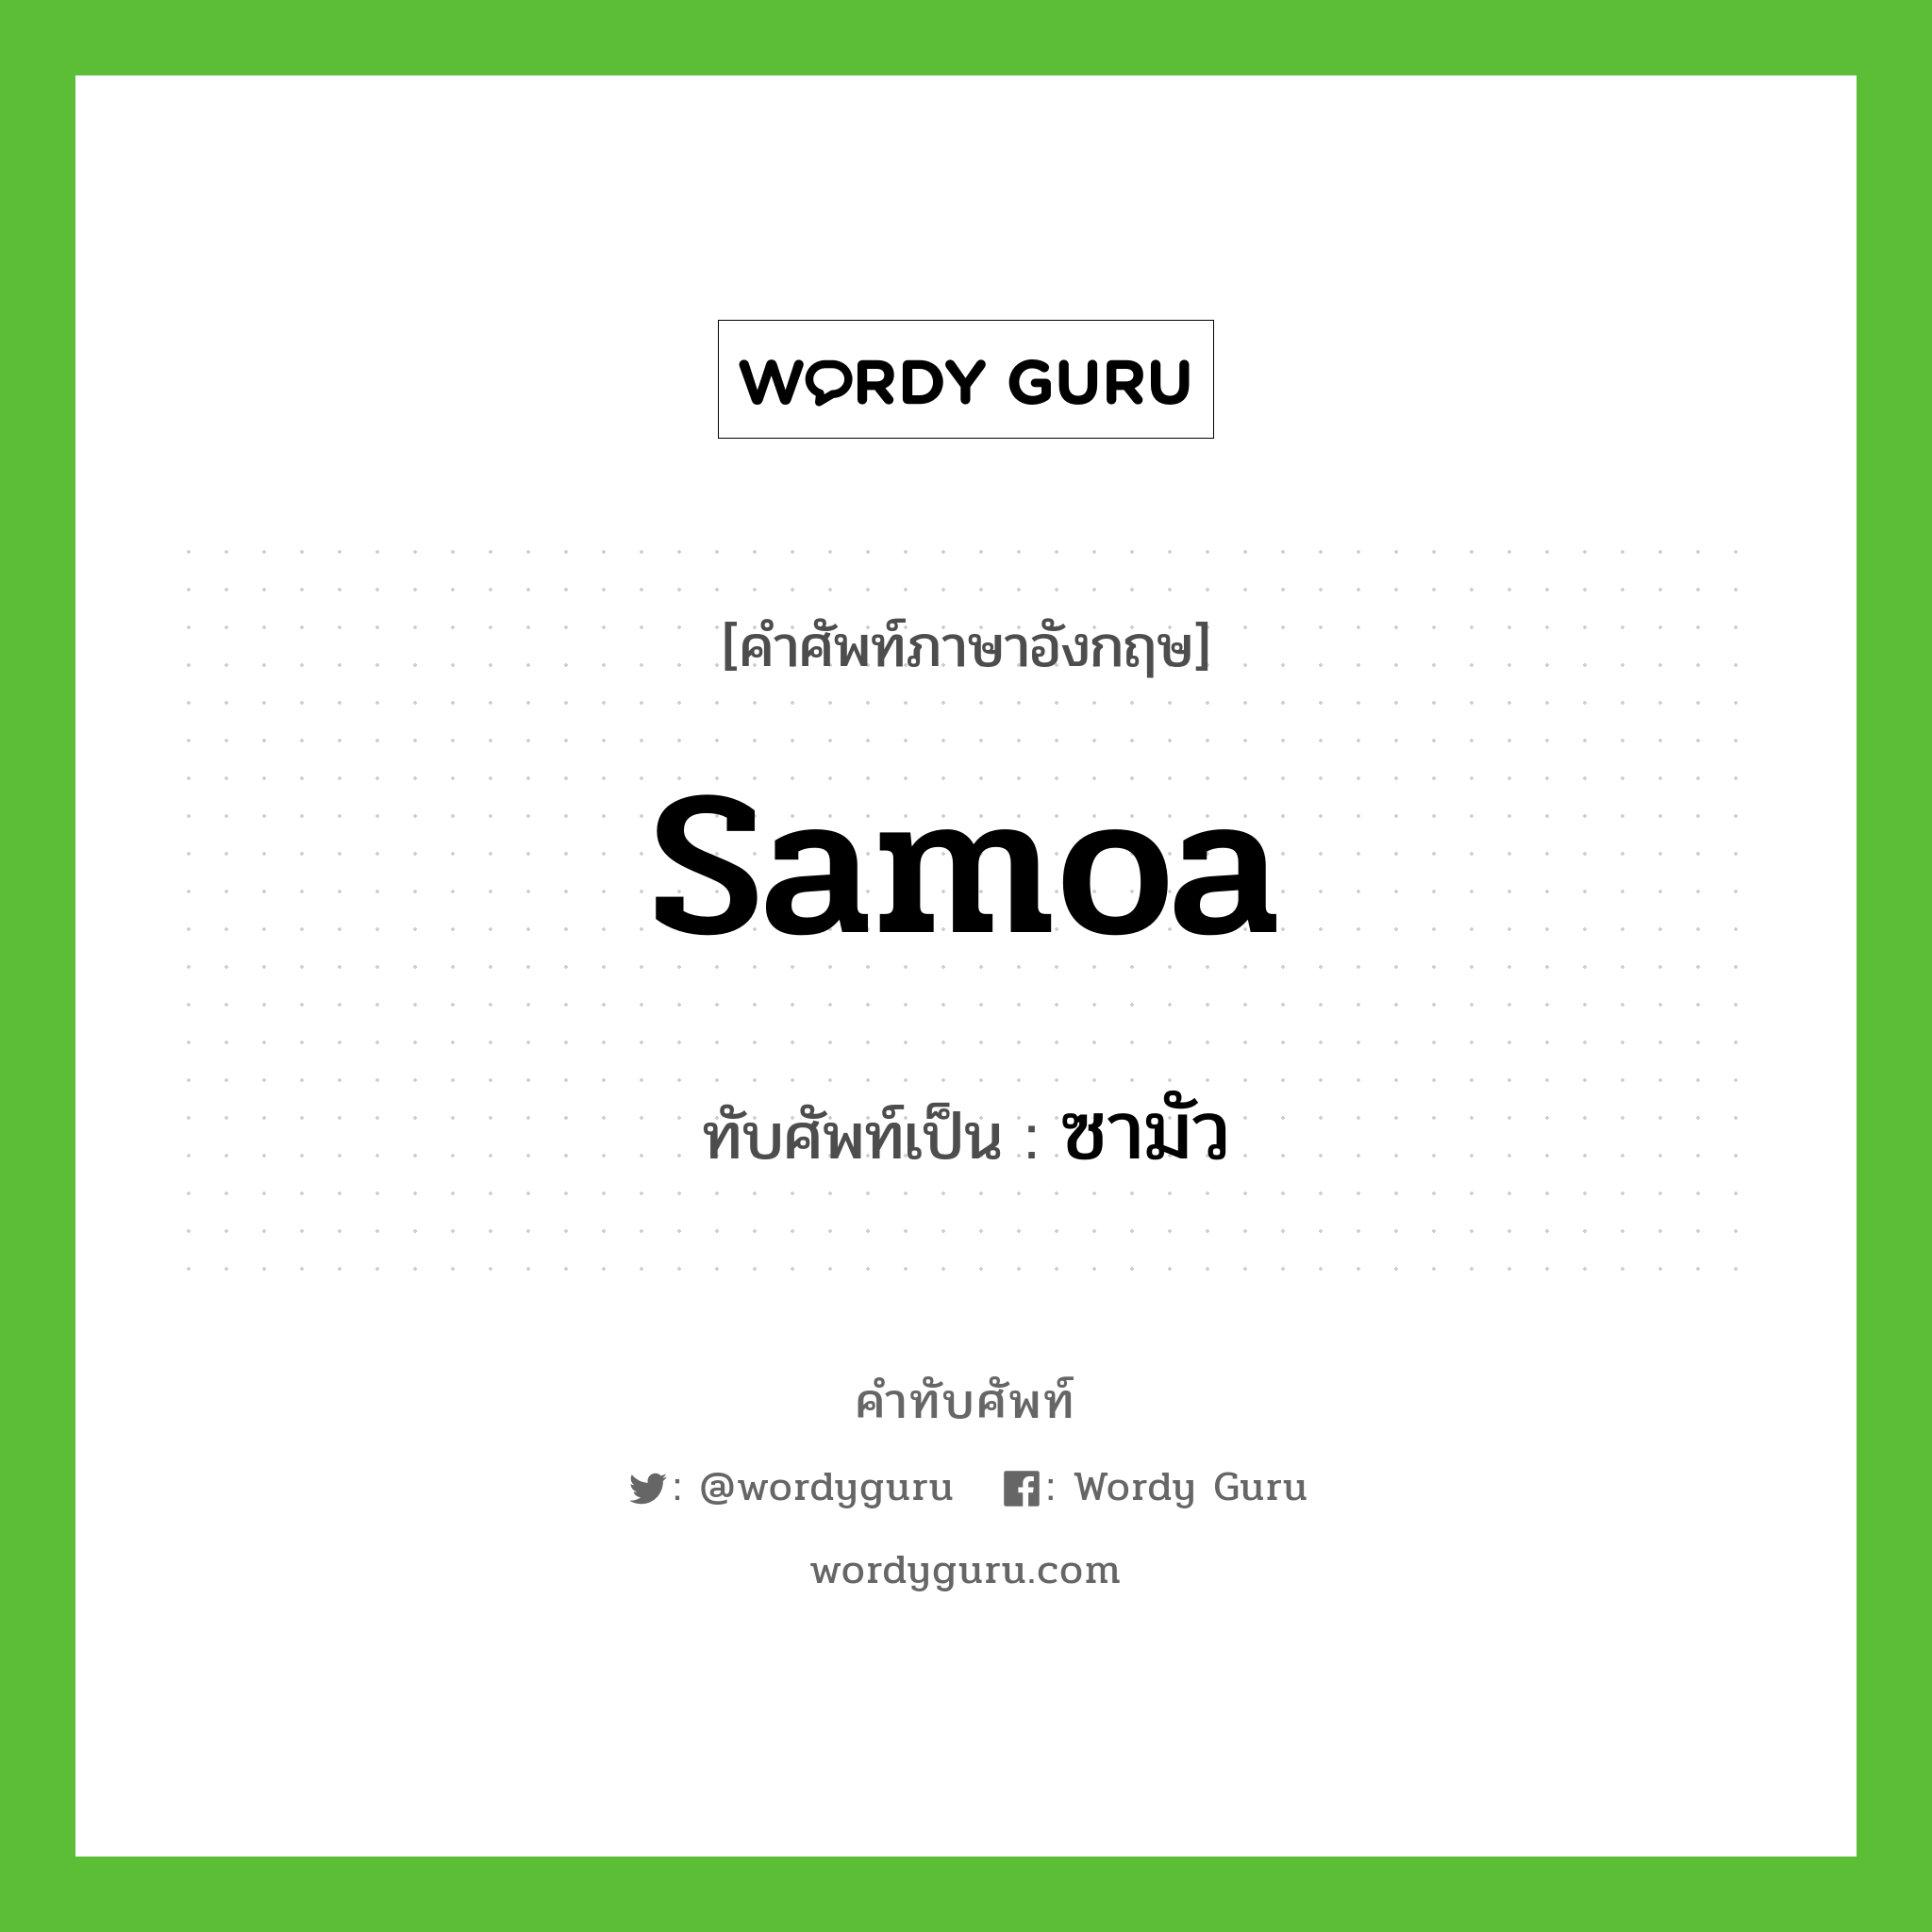 ซามัว เขียนอย่างไร?, คำศัพท์ภาษาอังกฤษ ซามัว ทับศัพท์เป็น Samoa